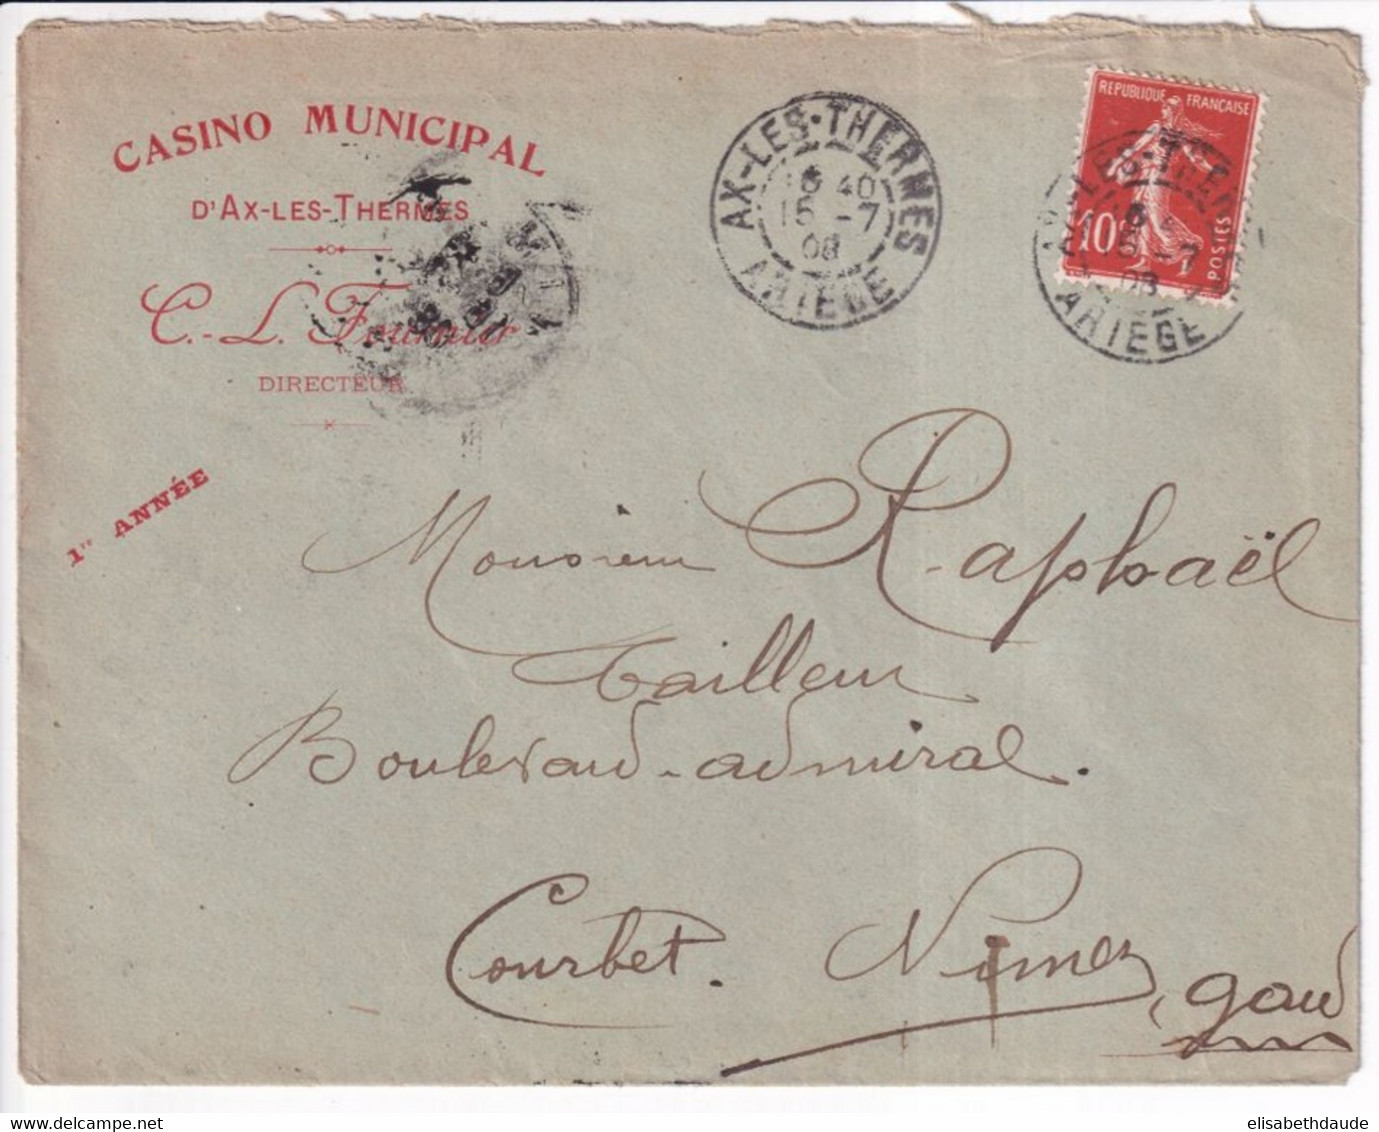 1908 - ETIQUETTE COMMERCIALE "CASINO MUNICIPAL - THEATRE MUSIQUE" De AX LES THERMES (ARIEGE) Sur ENVELOPPE PUB SEMEUSE - Covers & Documents